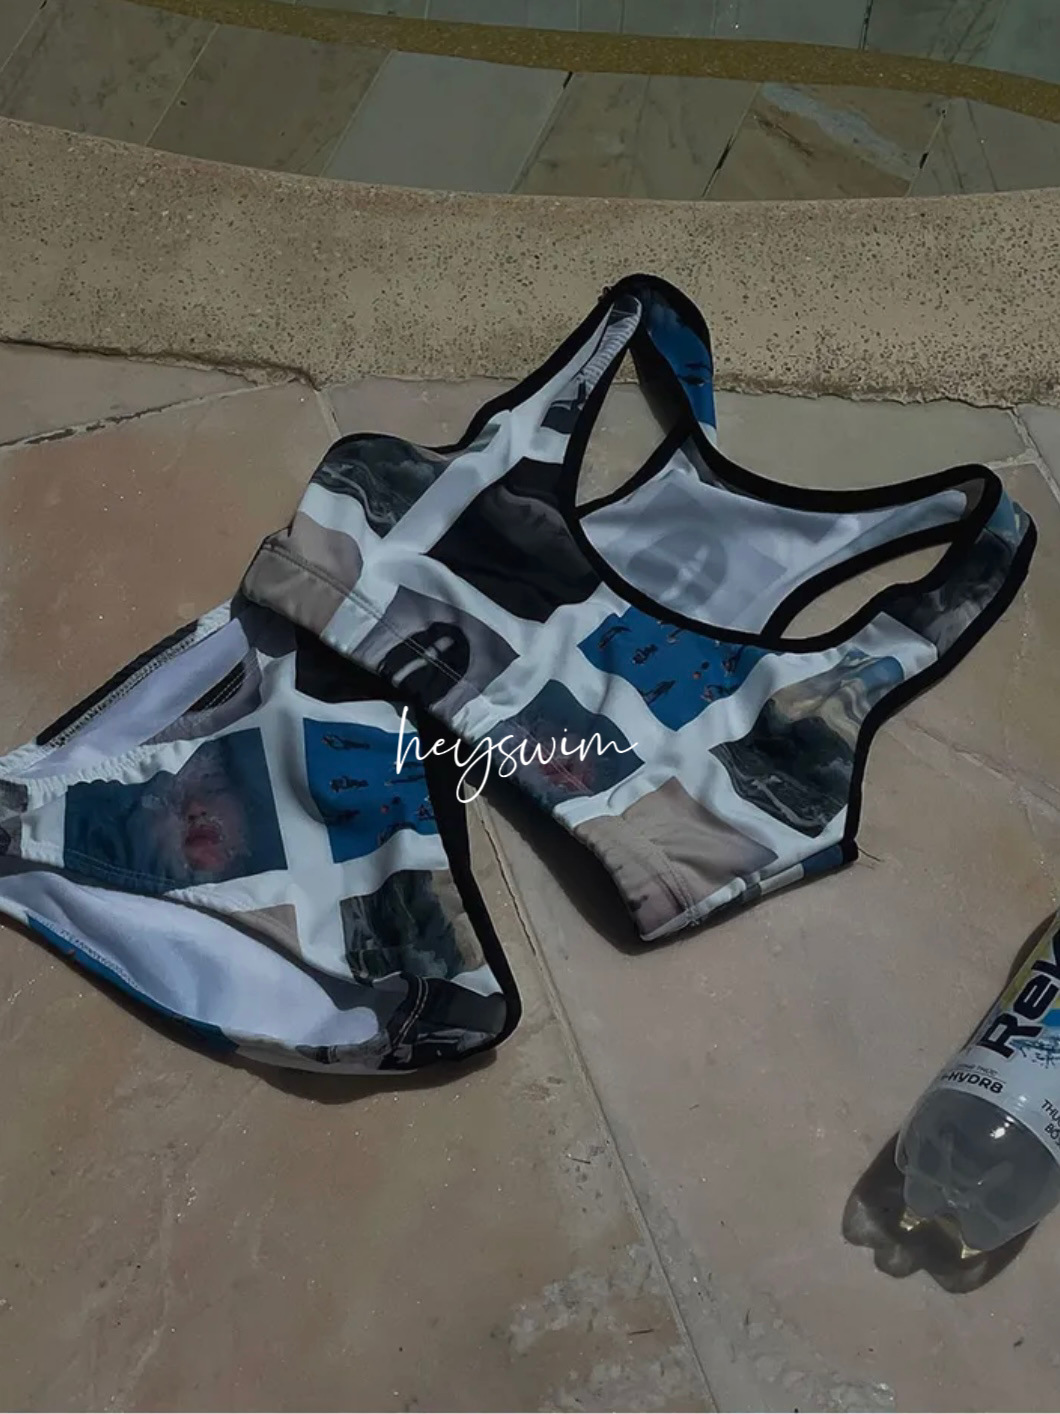 Geometric Plaid Color Patchwork Swimsuit Women Print Graffiti Tank Shorts Bikini